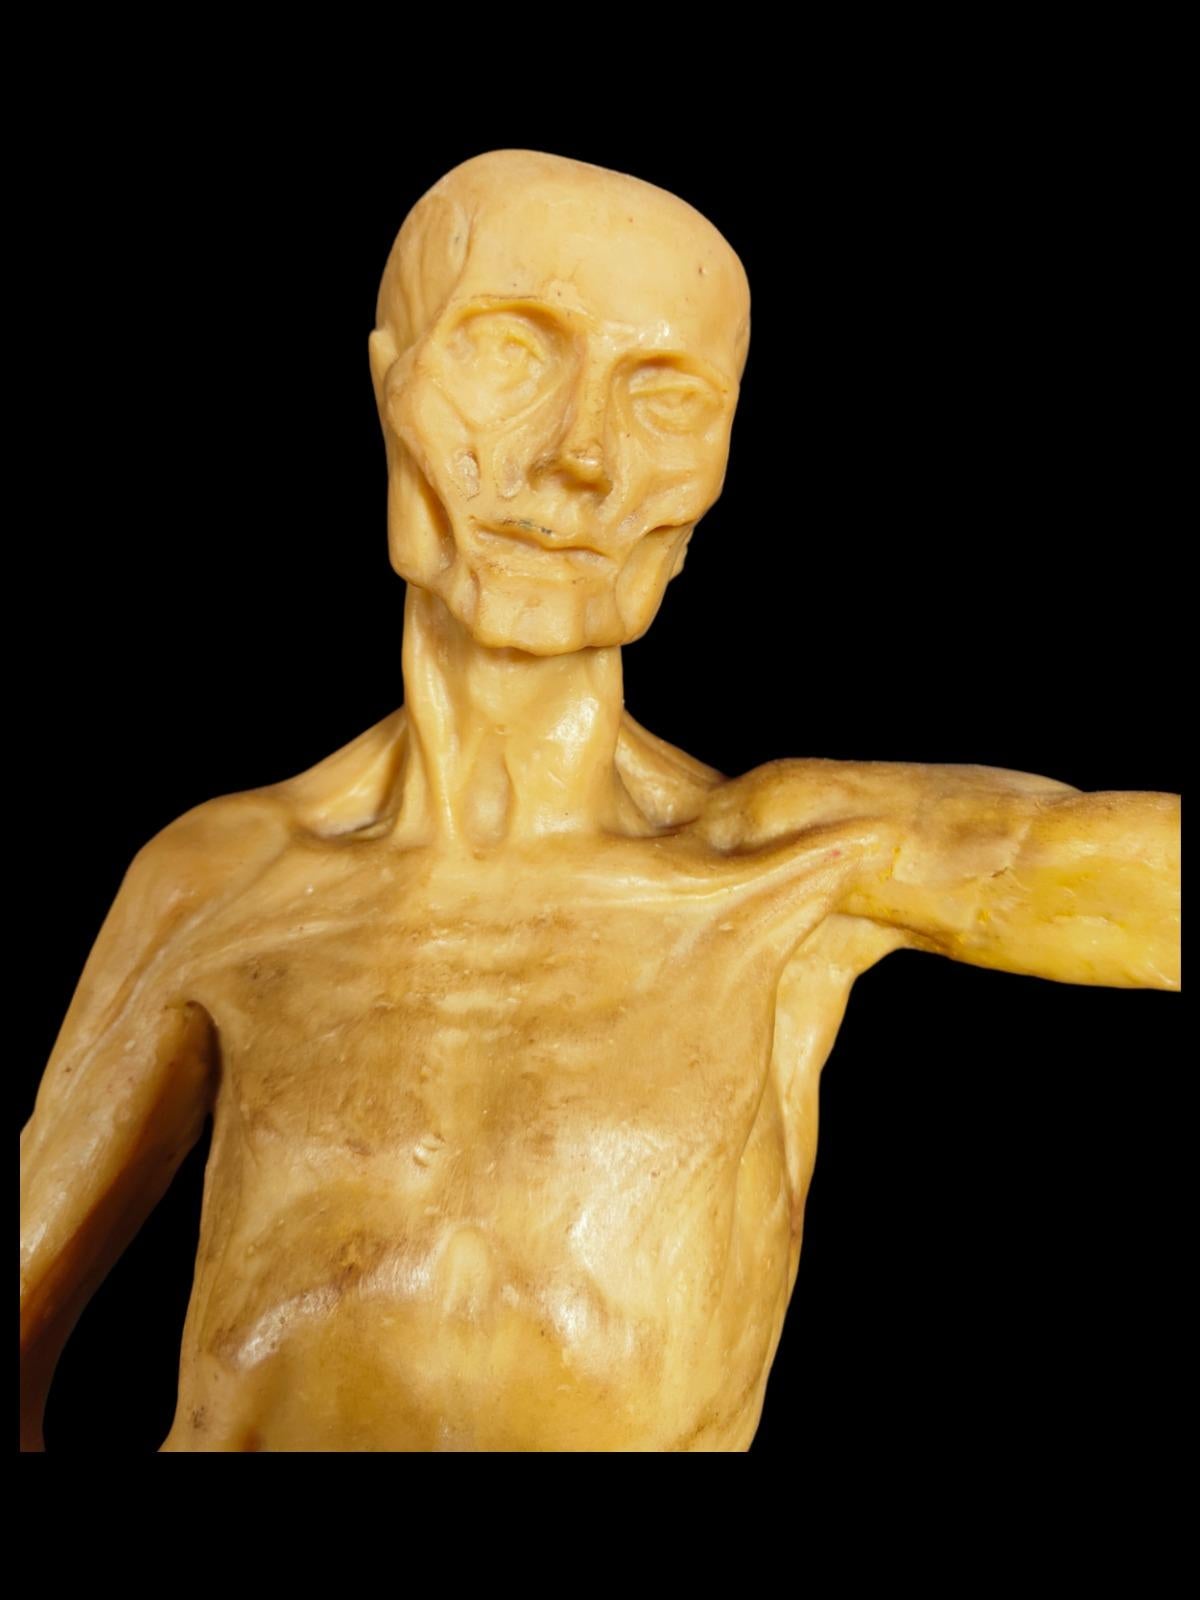 Anatomisches Modell in Wachs aus dem 18
Außergewöhnliches didaktisches anatomisches Modell aus Wachs. Die Verwendung dieser Art von didaktischen Modellen verschwand im 19. Jahrhundert mit der Entdeckung der Verwendung anderer Materialien, die sie